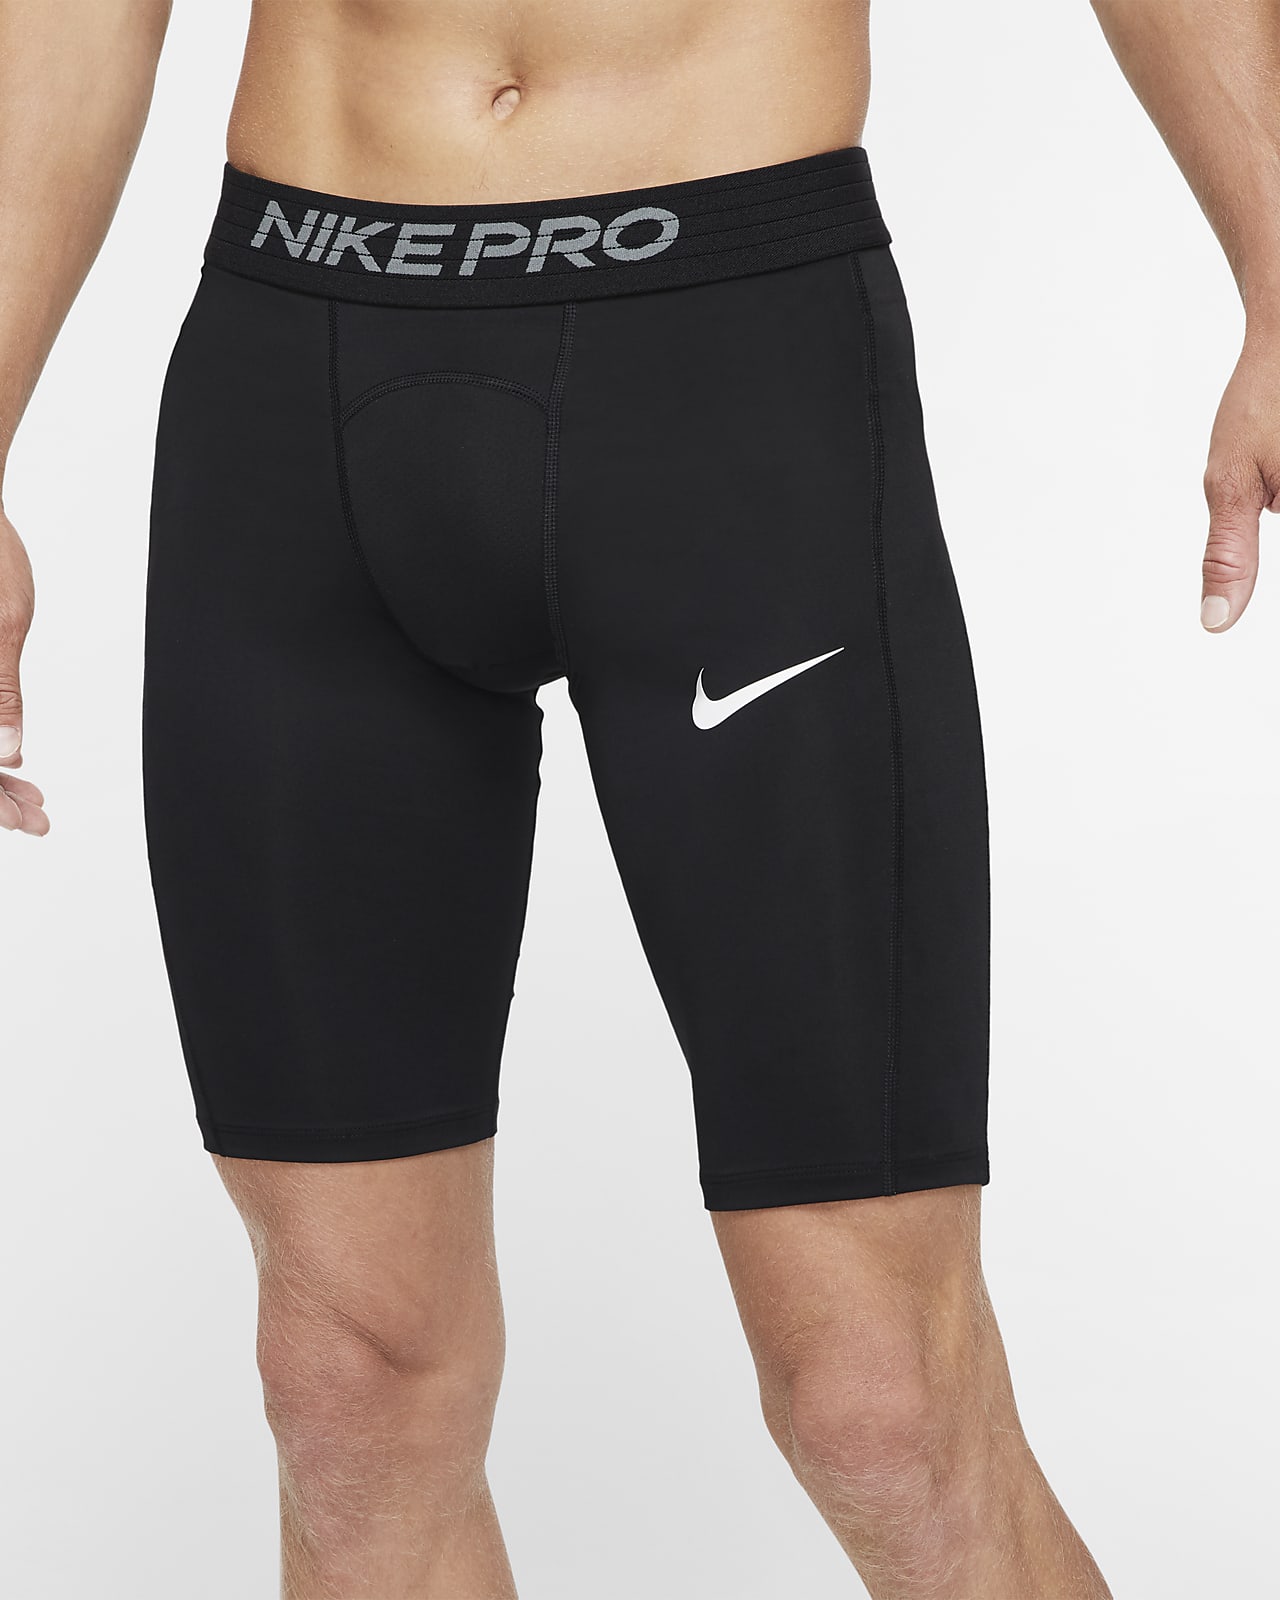 nike spandex shorts sale